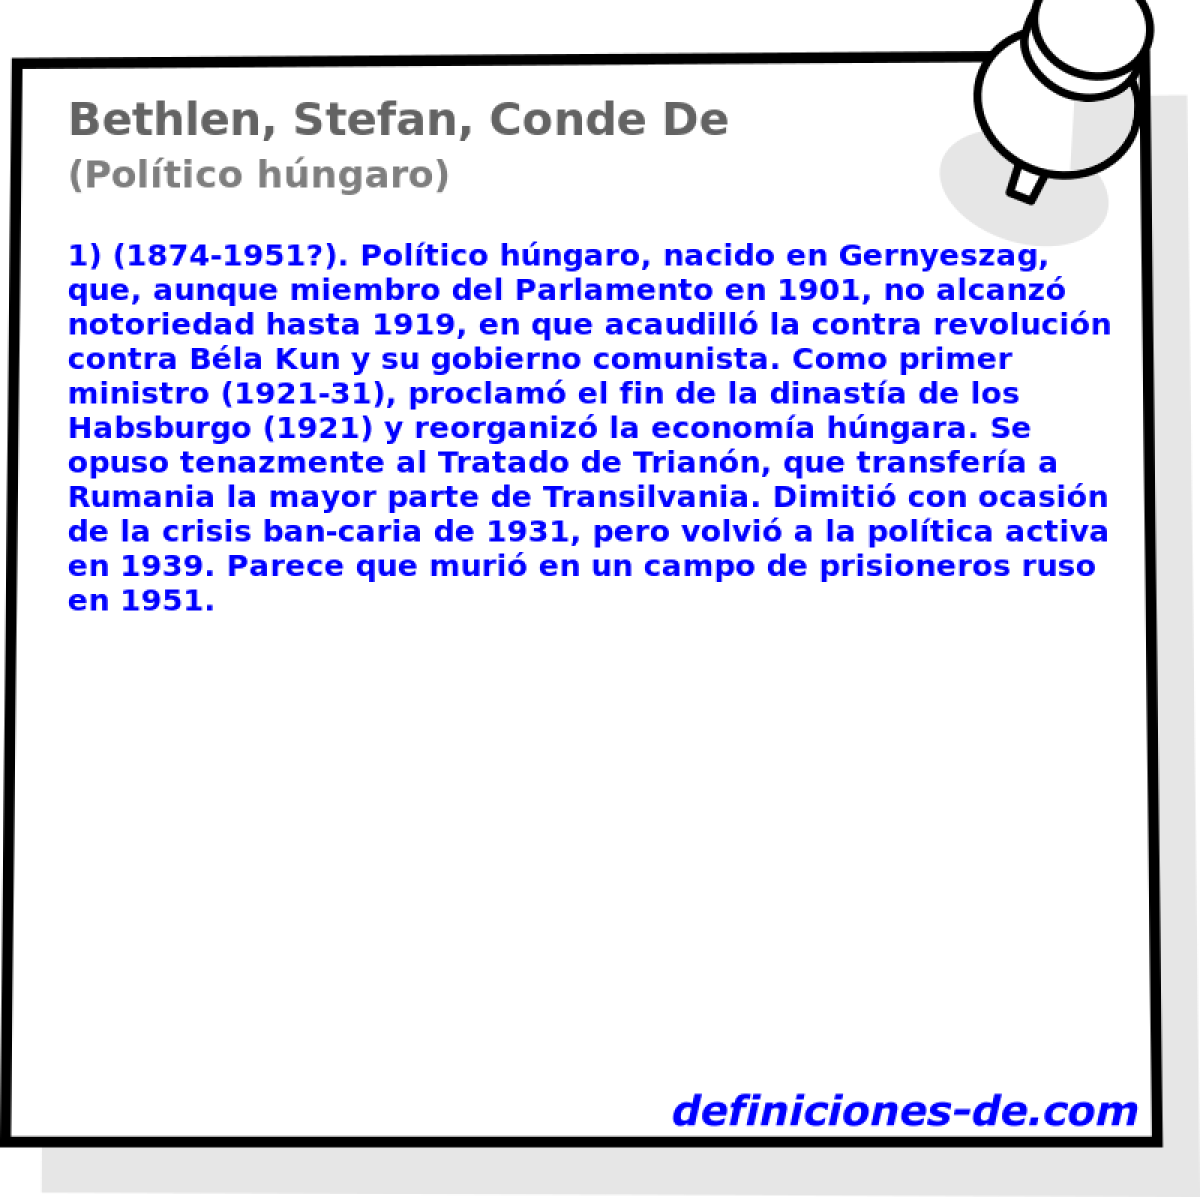 Bethlen, Stefan, Conde De (Poltico hngaro)